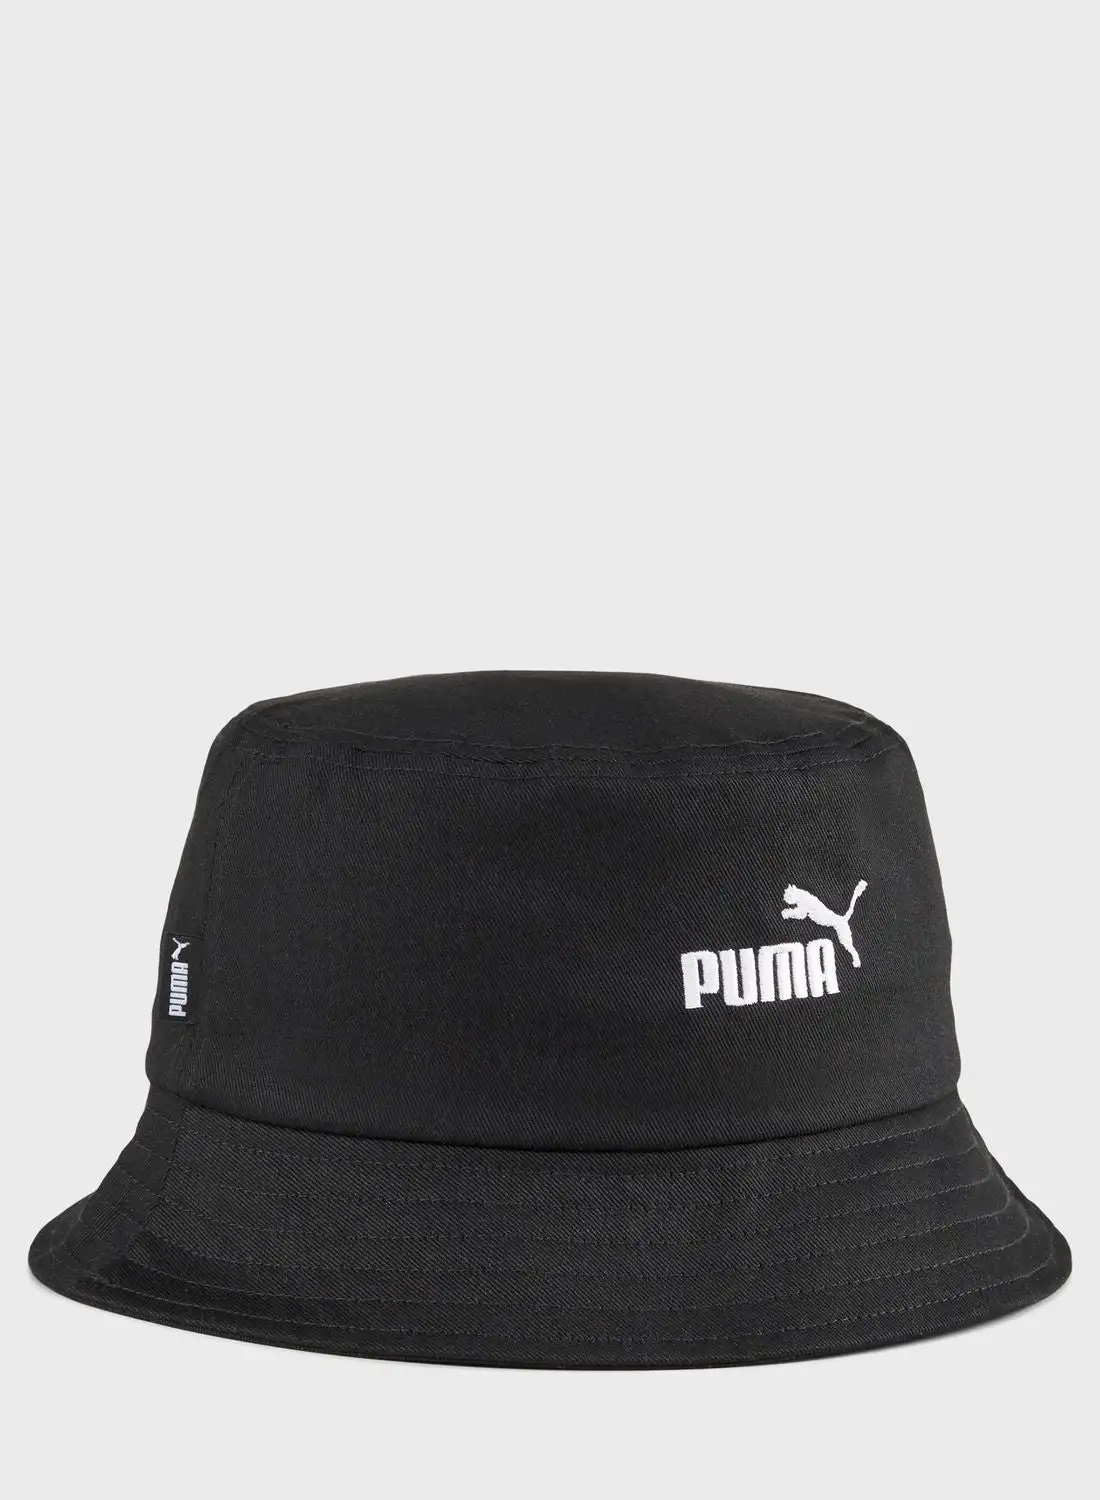 قبعة بوما الأساسية رقم 1 بشعار